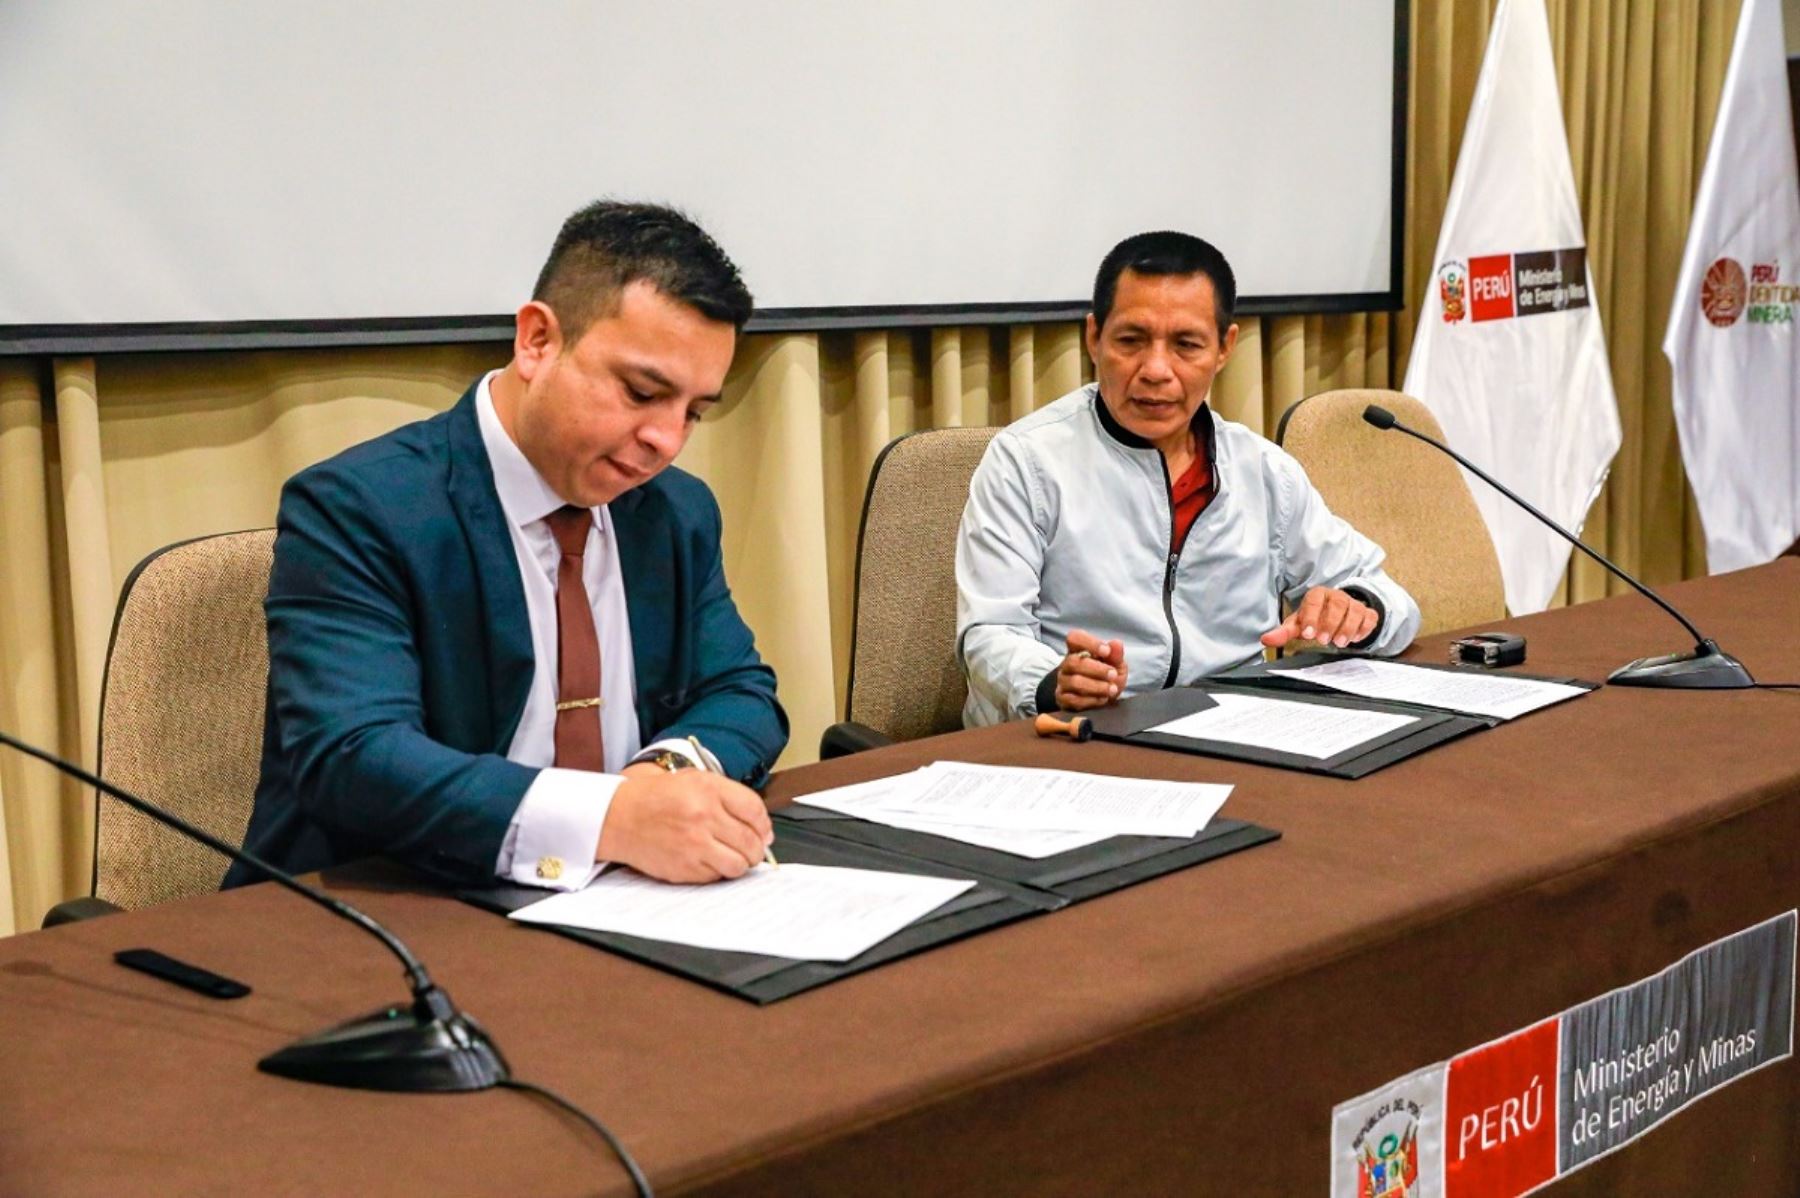 Viceministro del Minem, Martín Dávila Pérez y alcalde distrital de Yoquerana, Daniel Jiménez Huanan, firman convenio de transferenica de recursos. Foto: Cortesía.